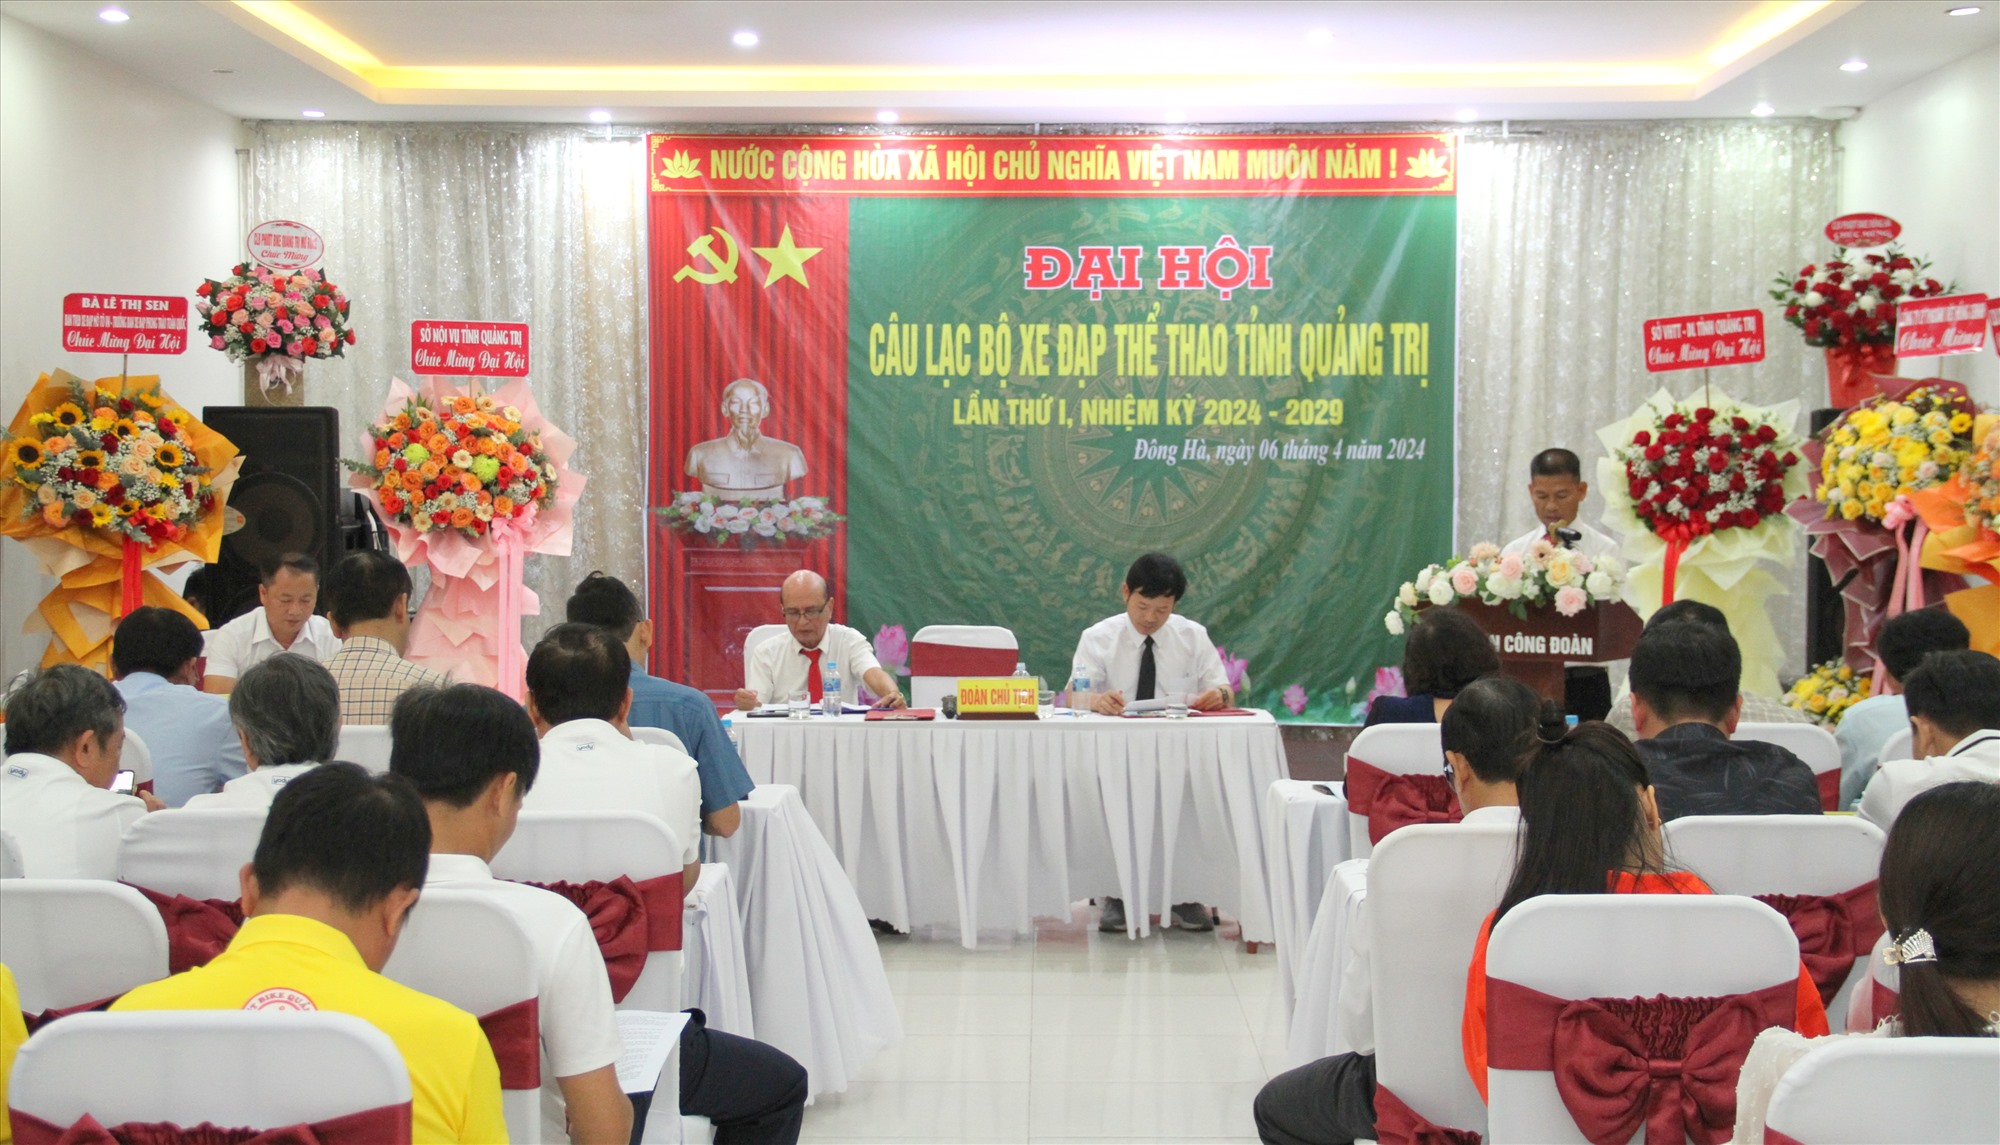 Đại hội đại biểu Câu lạc bộ Xe đạp thể thao tỉnh Quảng Trị lần thứ I, nhiệm kỳ 2024-2029 - Ảnh: MĐ